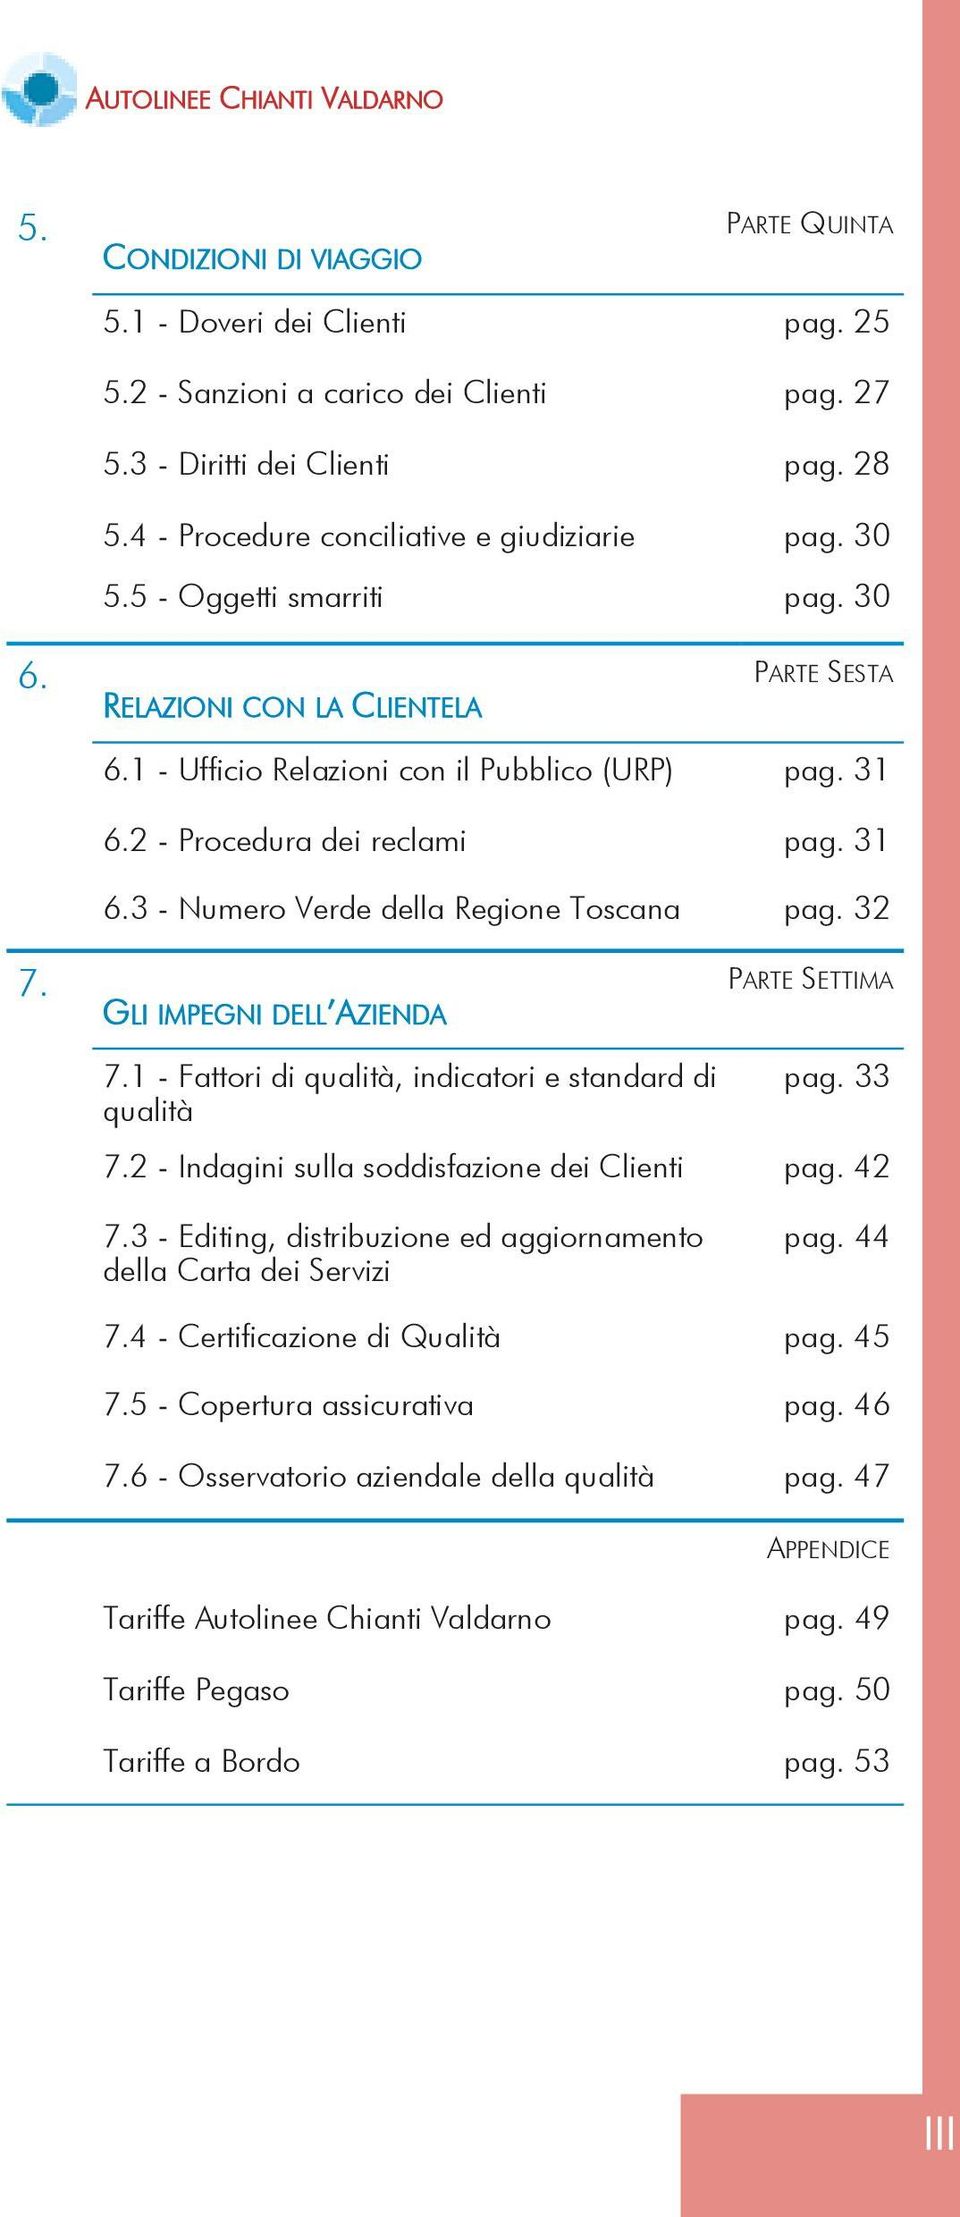 2 - Procedura dei reclami pag. 31 6.3 - Numero Verde della Regione Toscana pag. 32 7. PARTE SETTIMA GLI IMPEGNI DELL AZIENDA 7.1 - Fattori di qualità, indicatori e standard di qualità pag. 33 7.